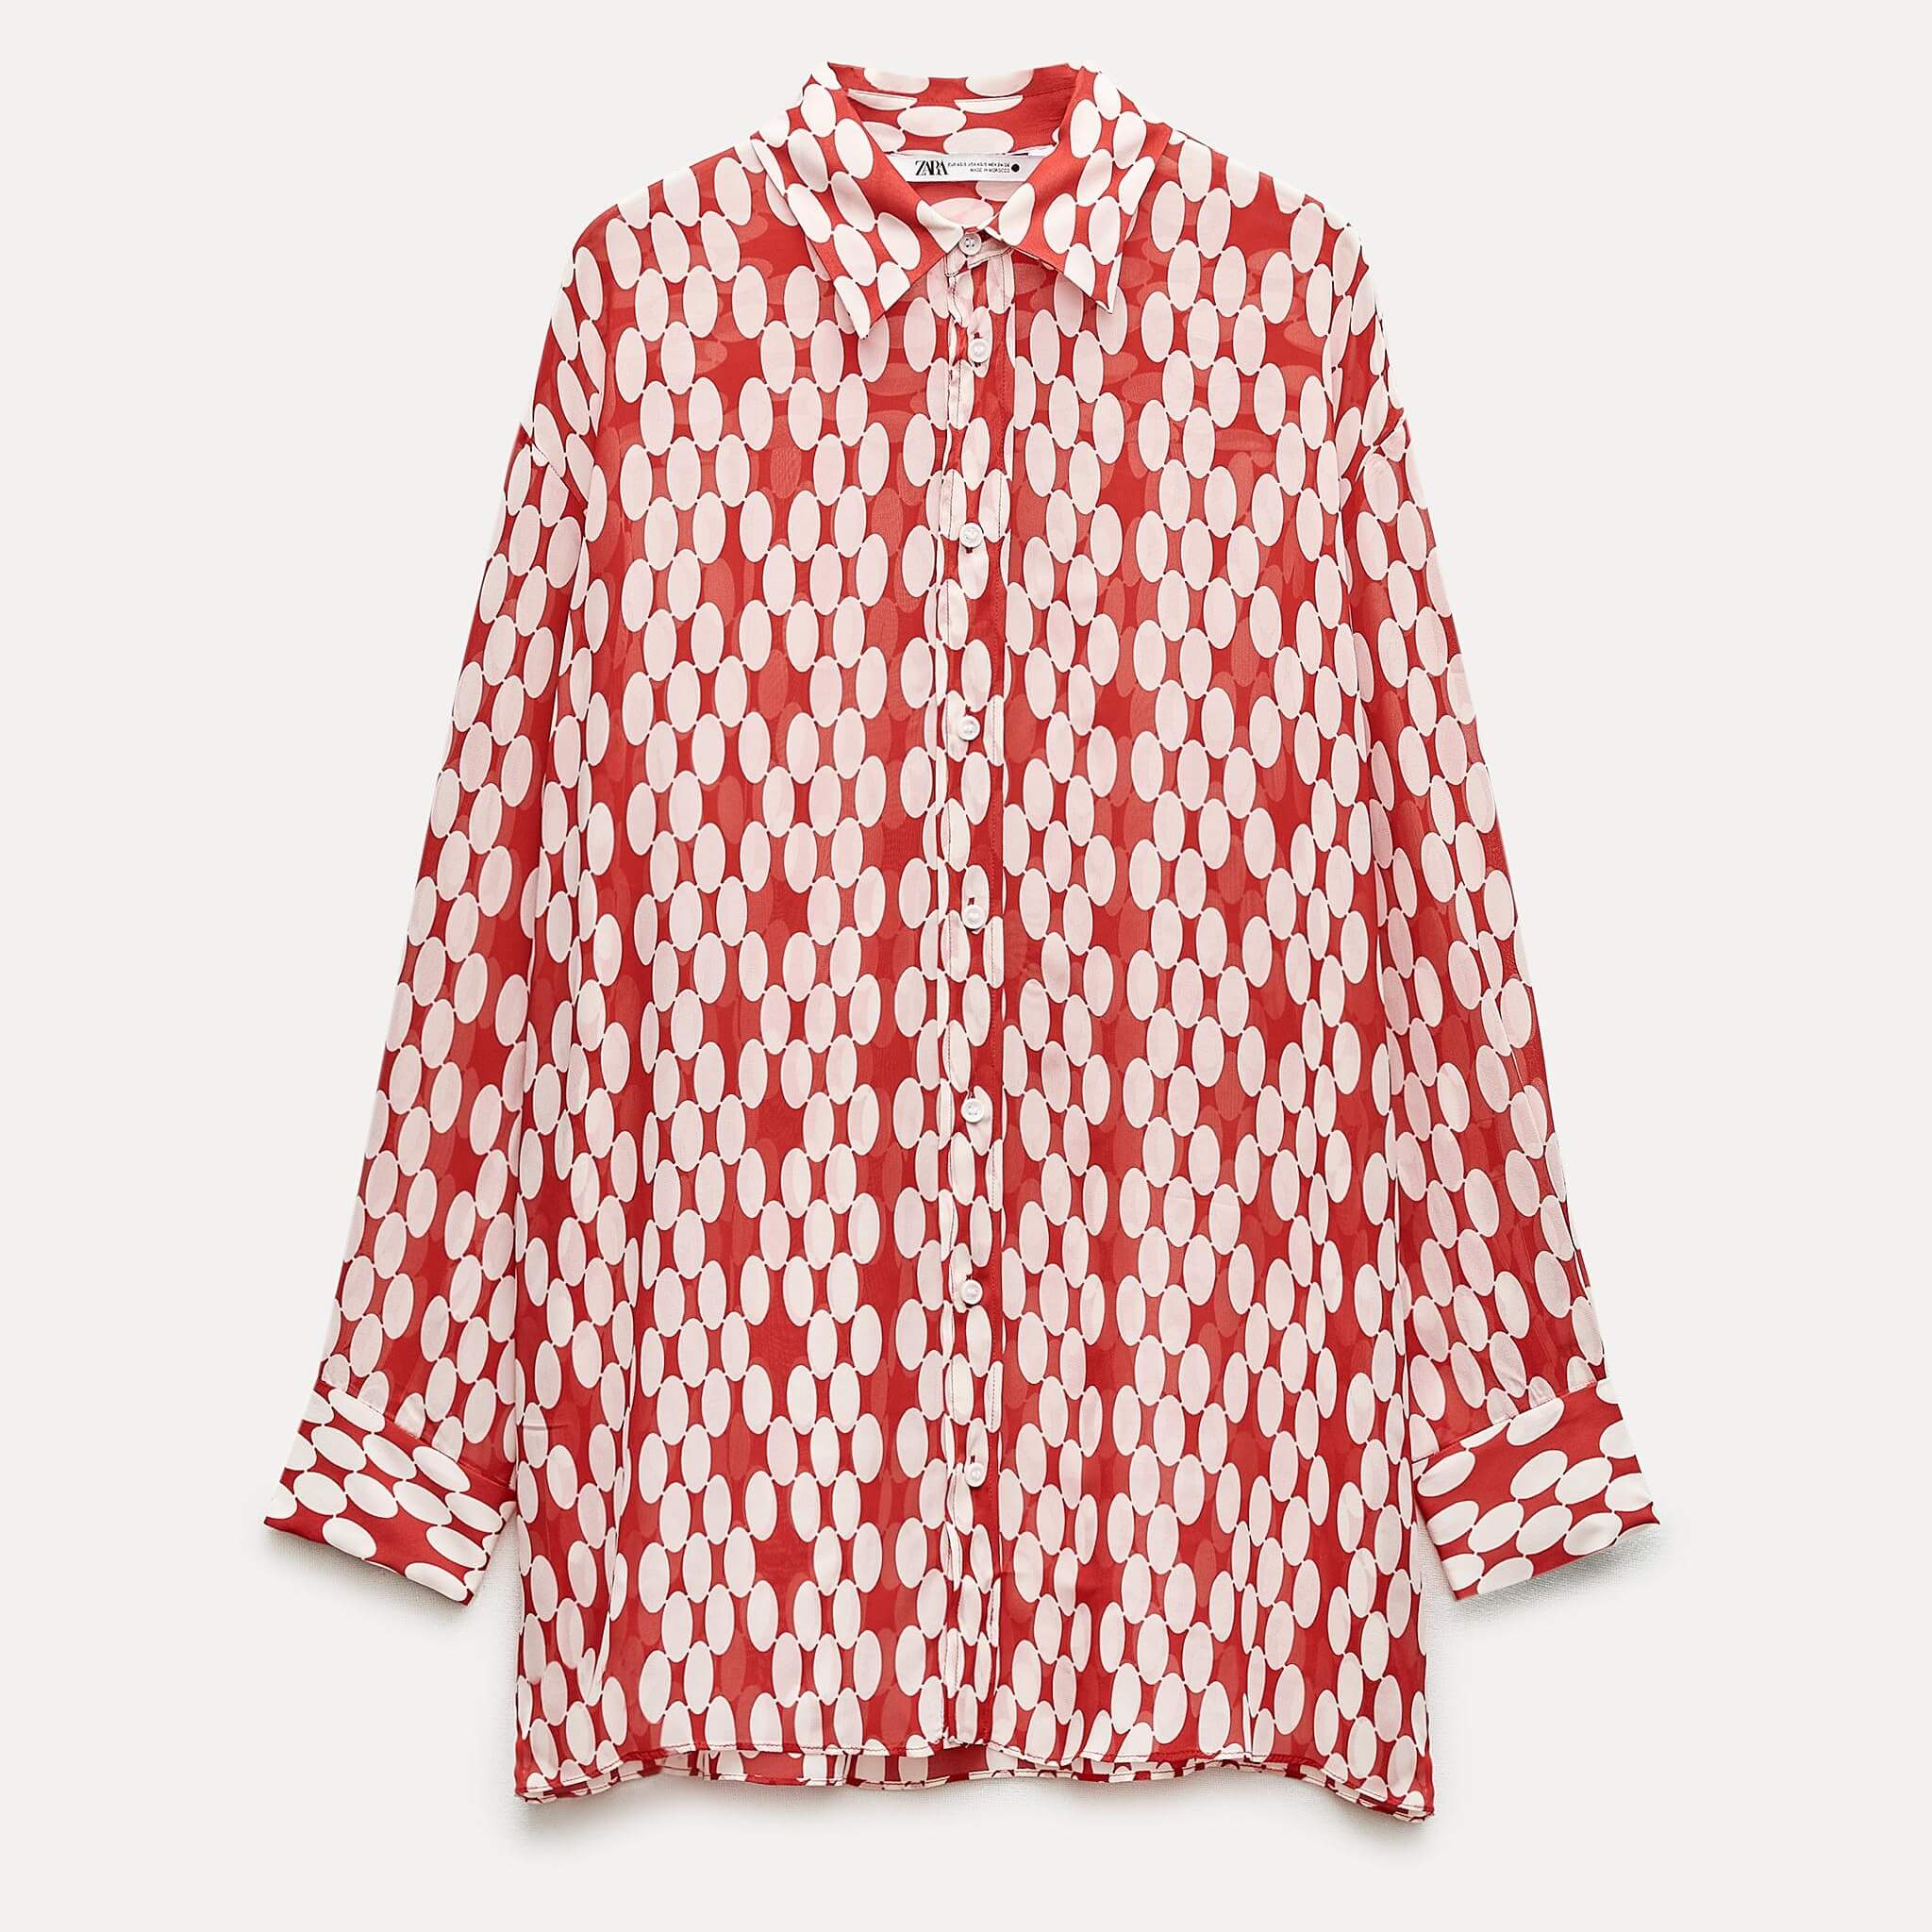 Рубашка Zara ZW Collection Flowing Printed, белый/красный рубашка zara zw collection printed светло бежевый красный